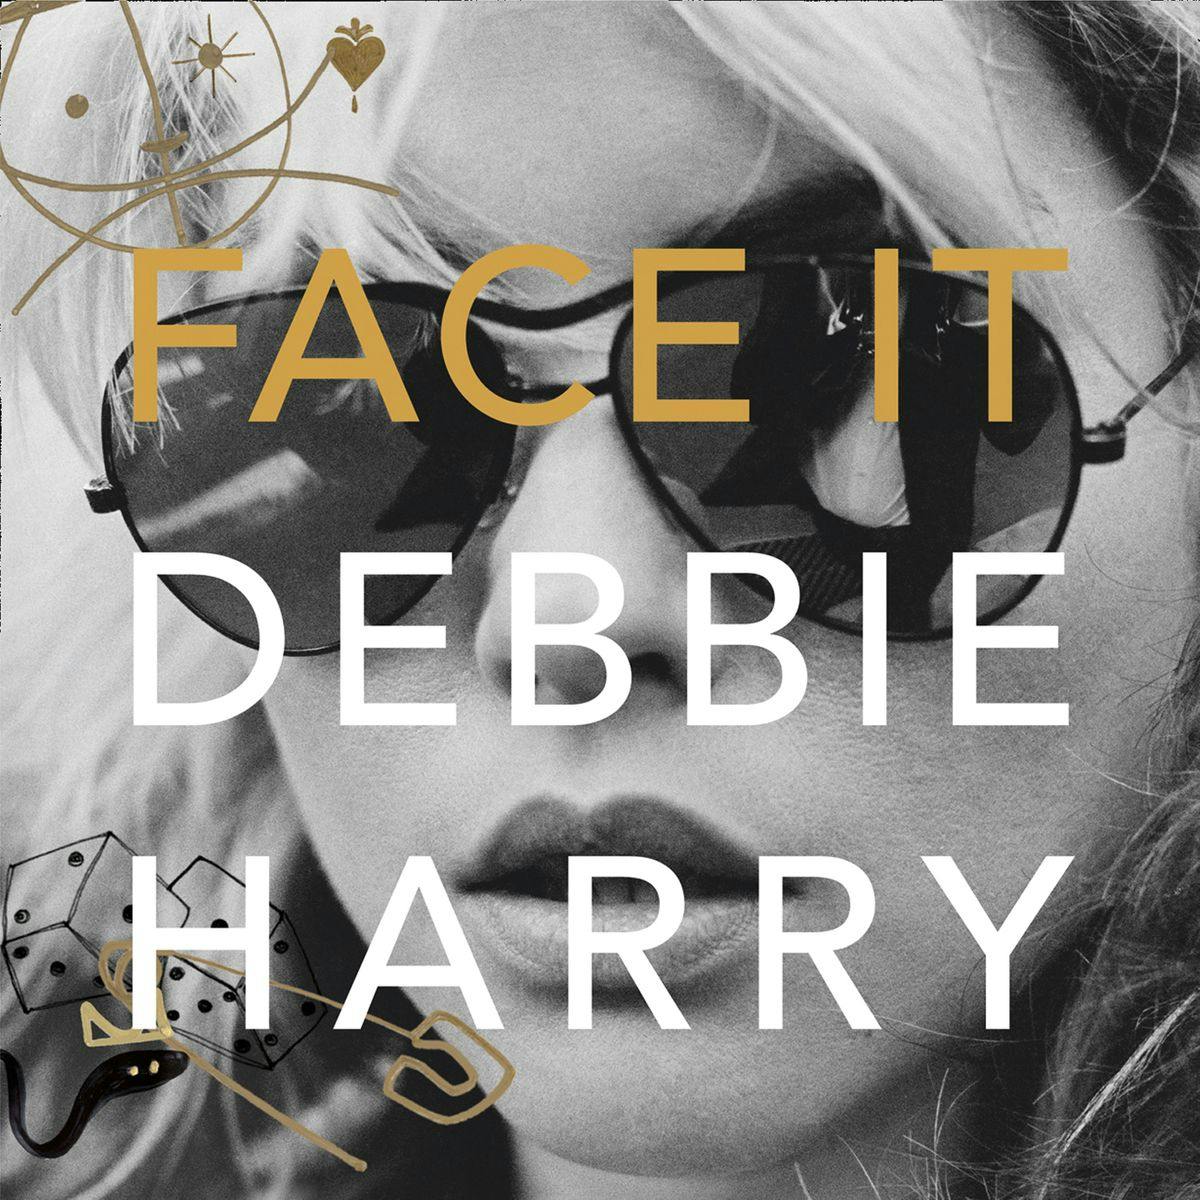 Face It: A Memoir by Debbie Harry